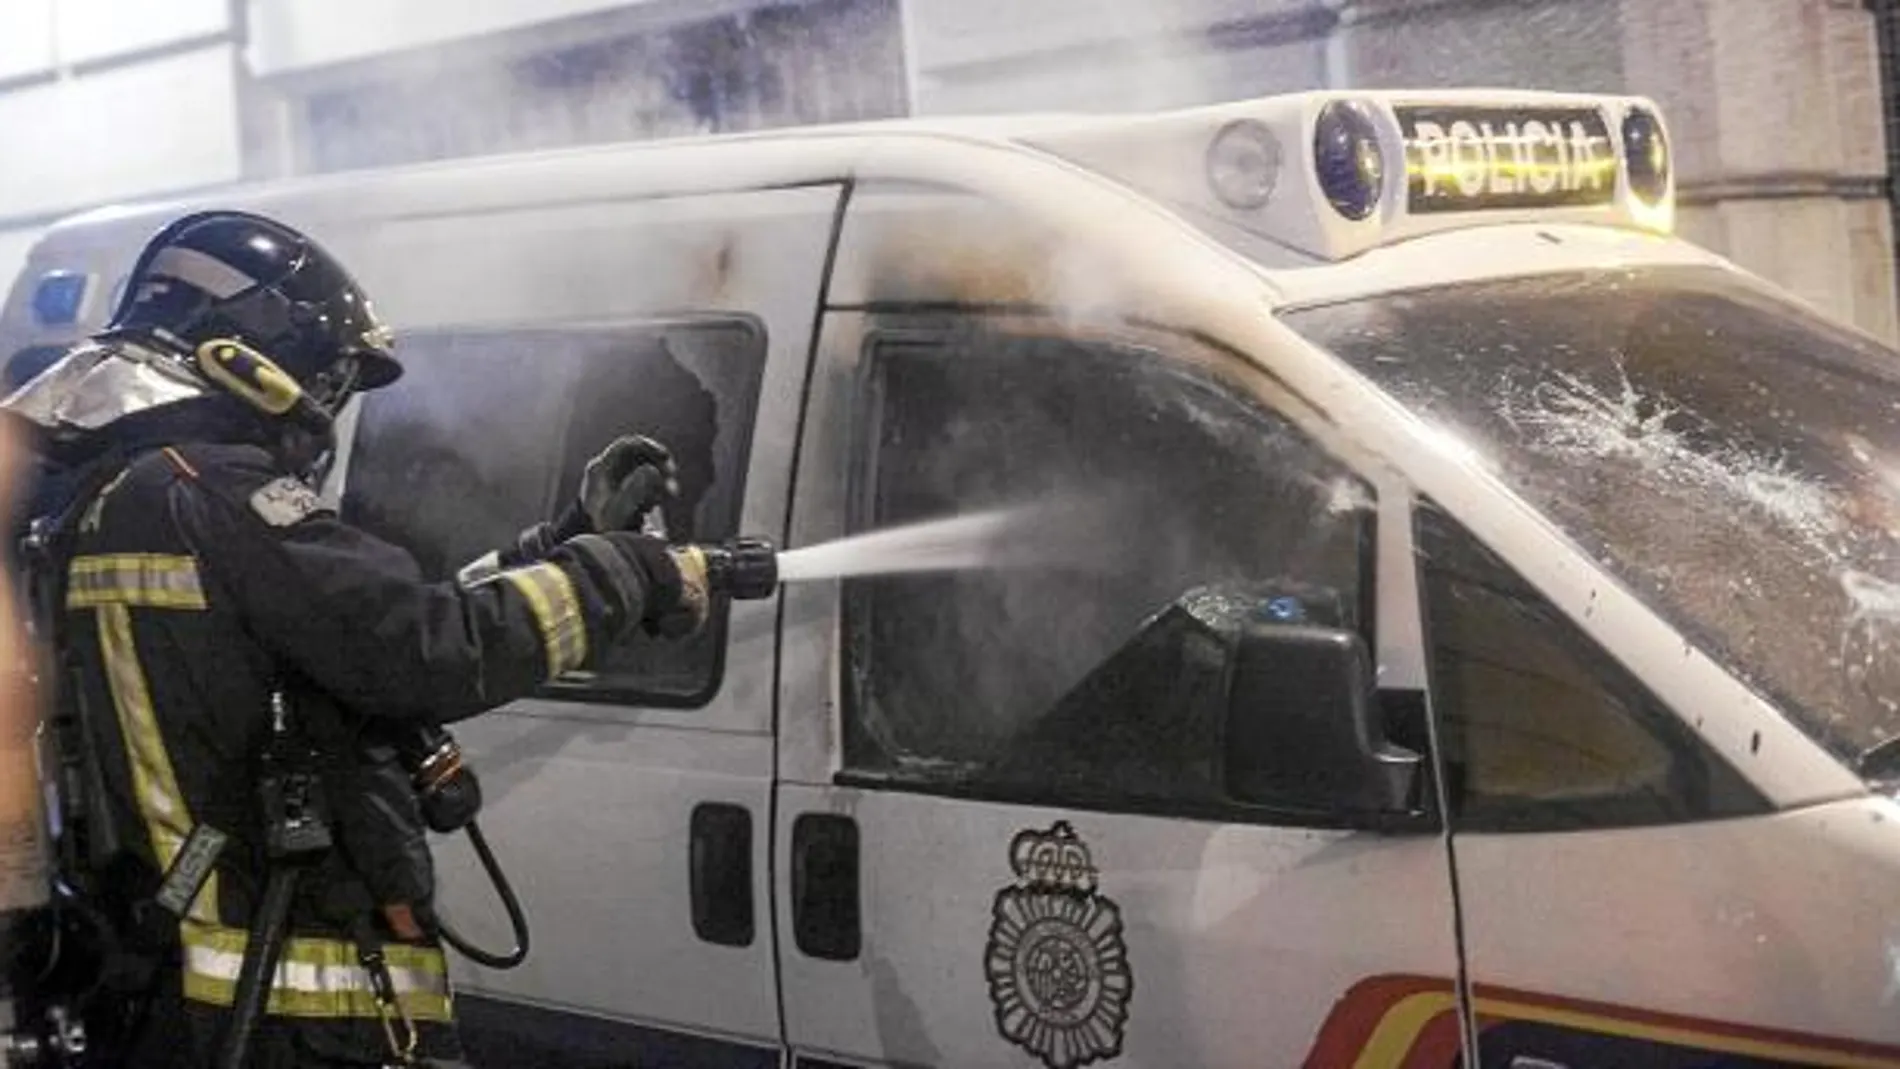 Los radicales quemaron dos coches de la Policía Nacional en la comisaría de la Vía Laietana